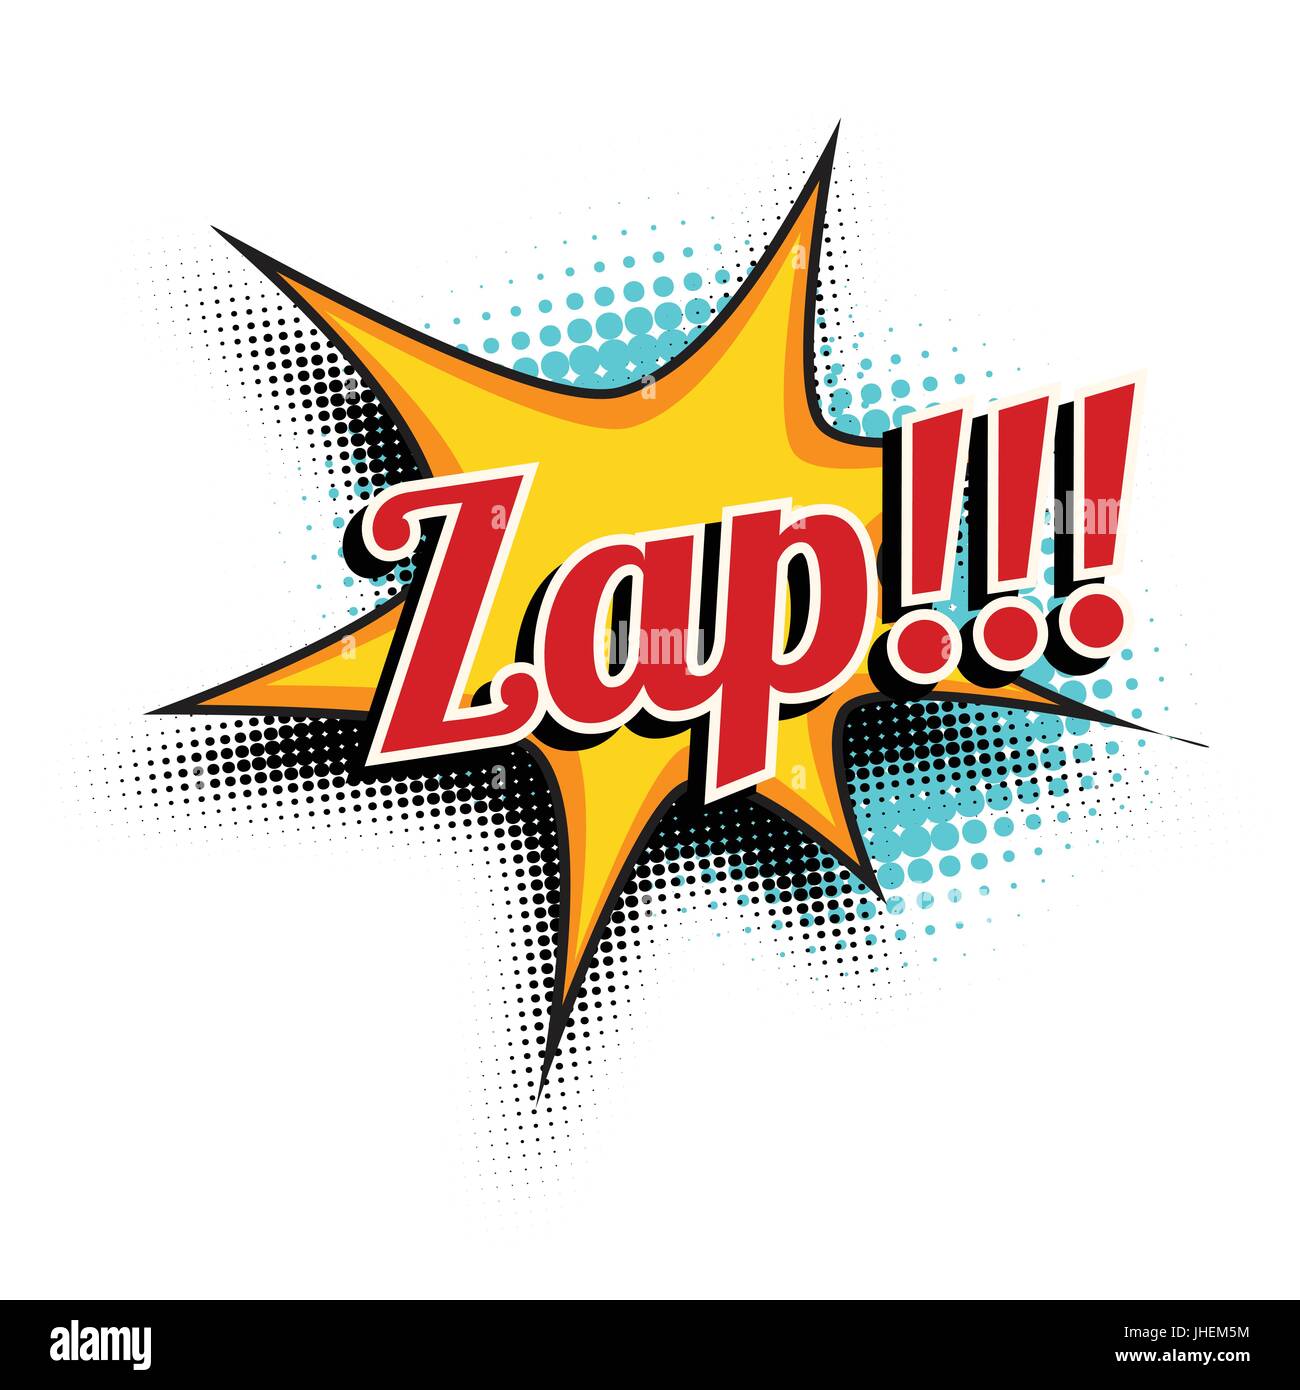 zap mot comique Illustration de Vecteur